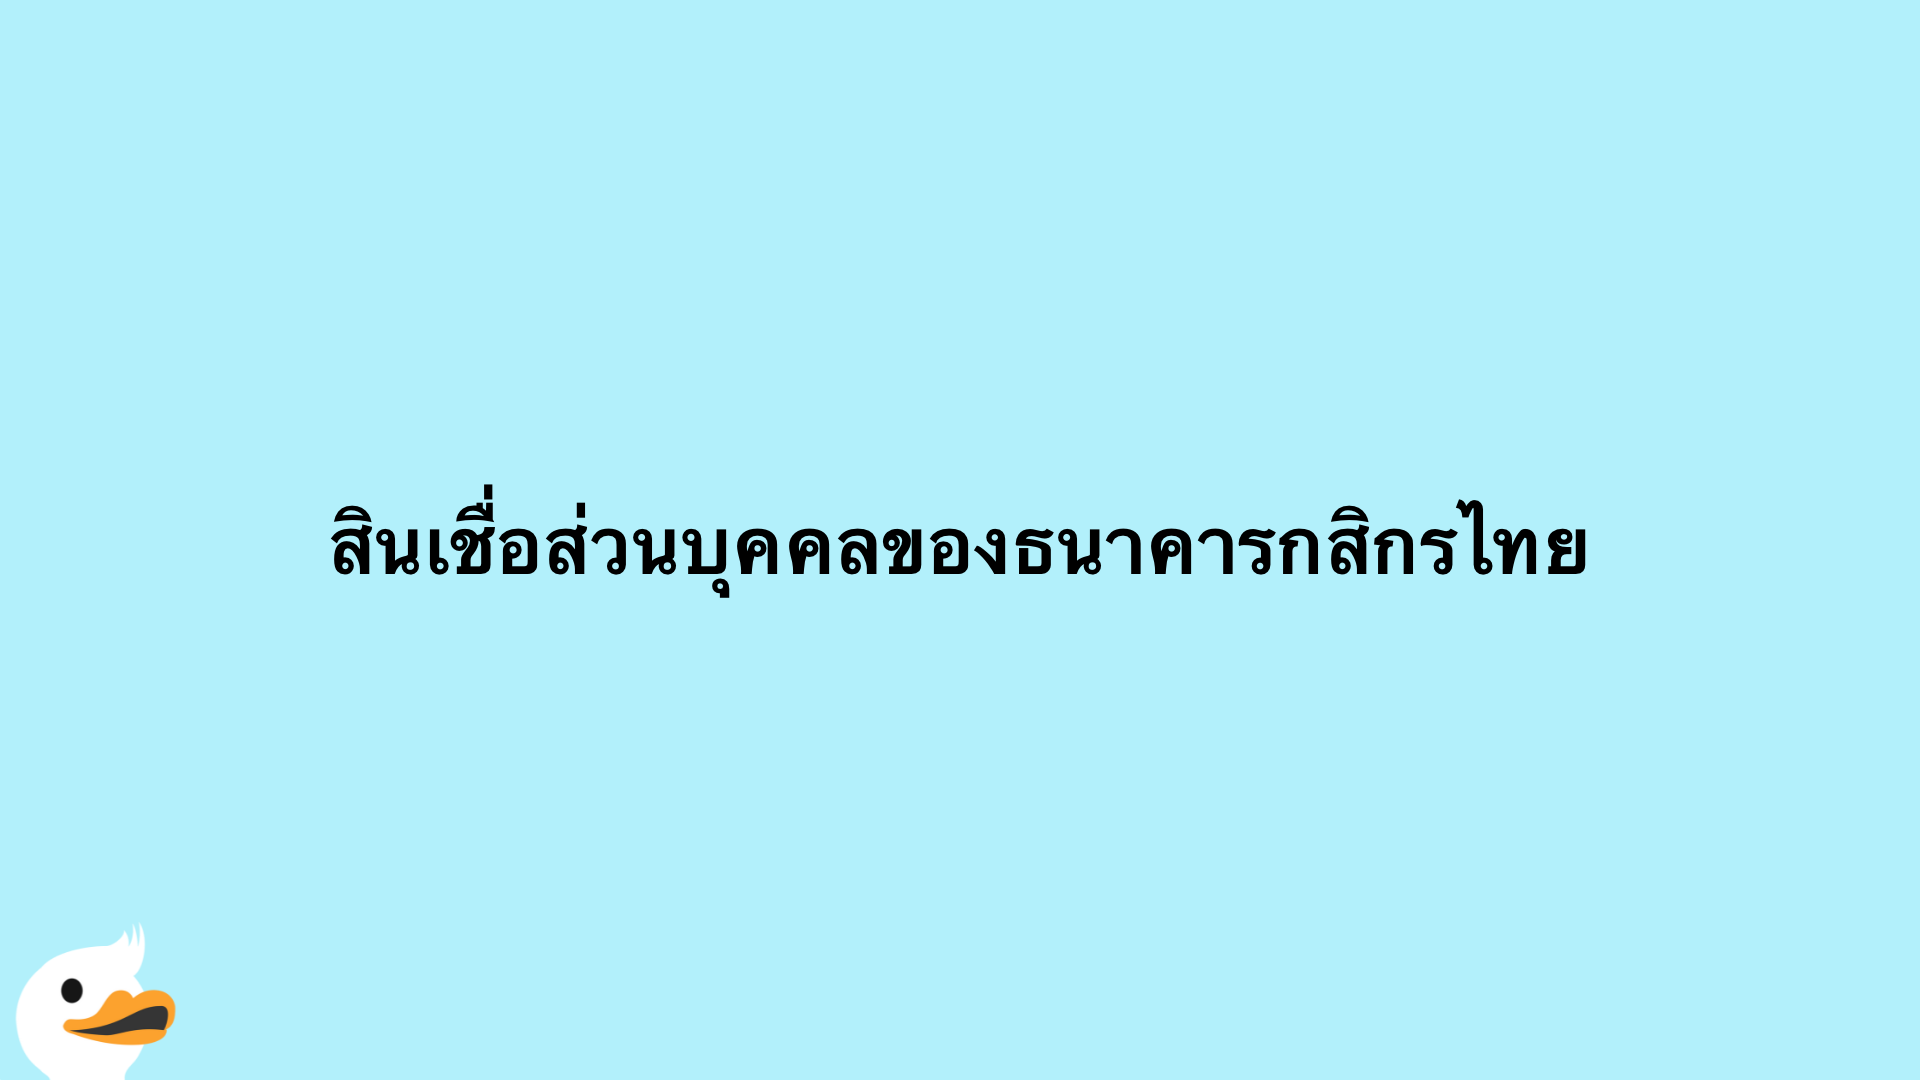 สินเชื่อส่วนบุคคลของธนาคารกสิกรไทย